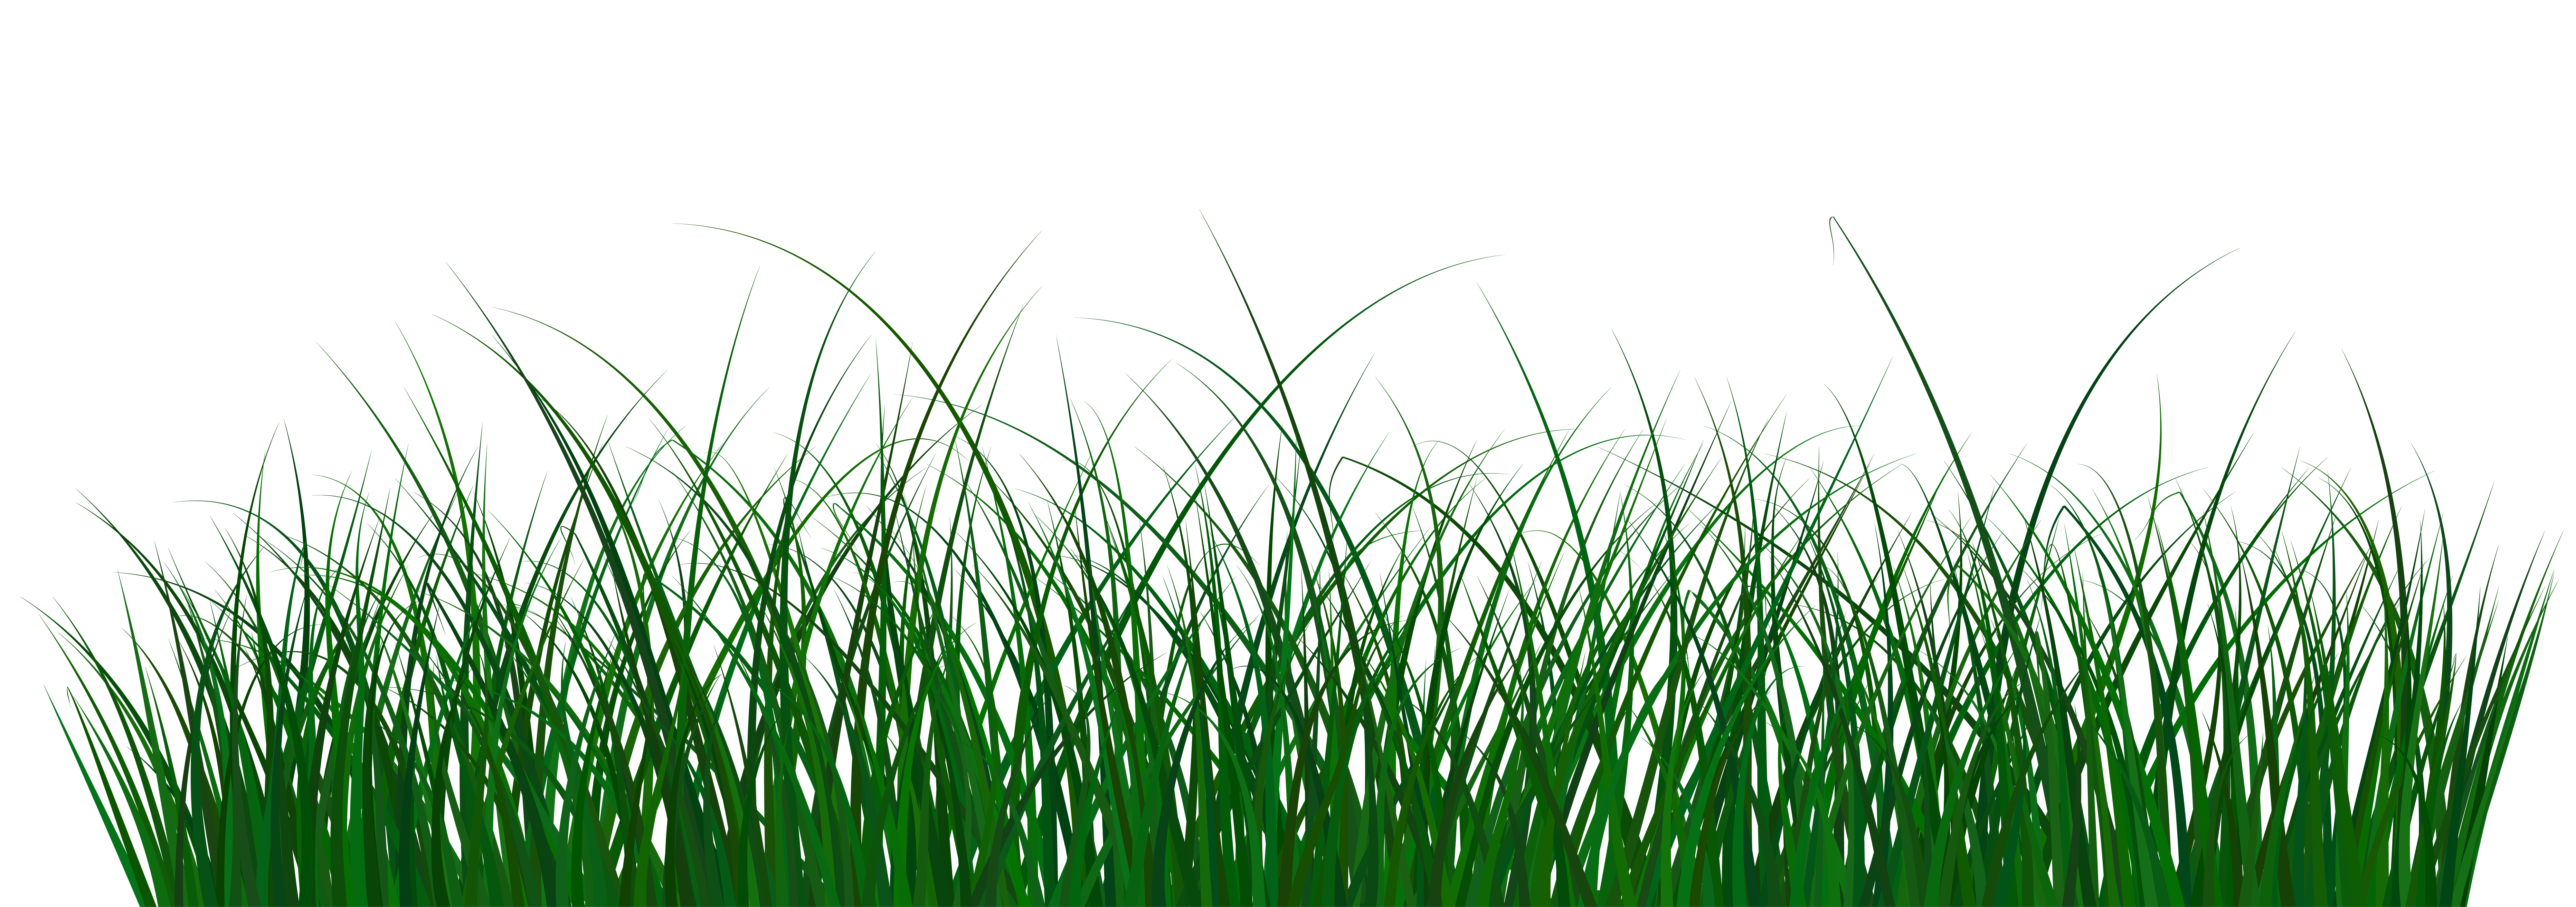 Green Grass PNG Clip Art Image.